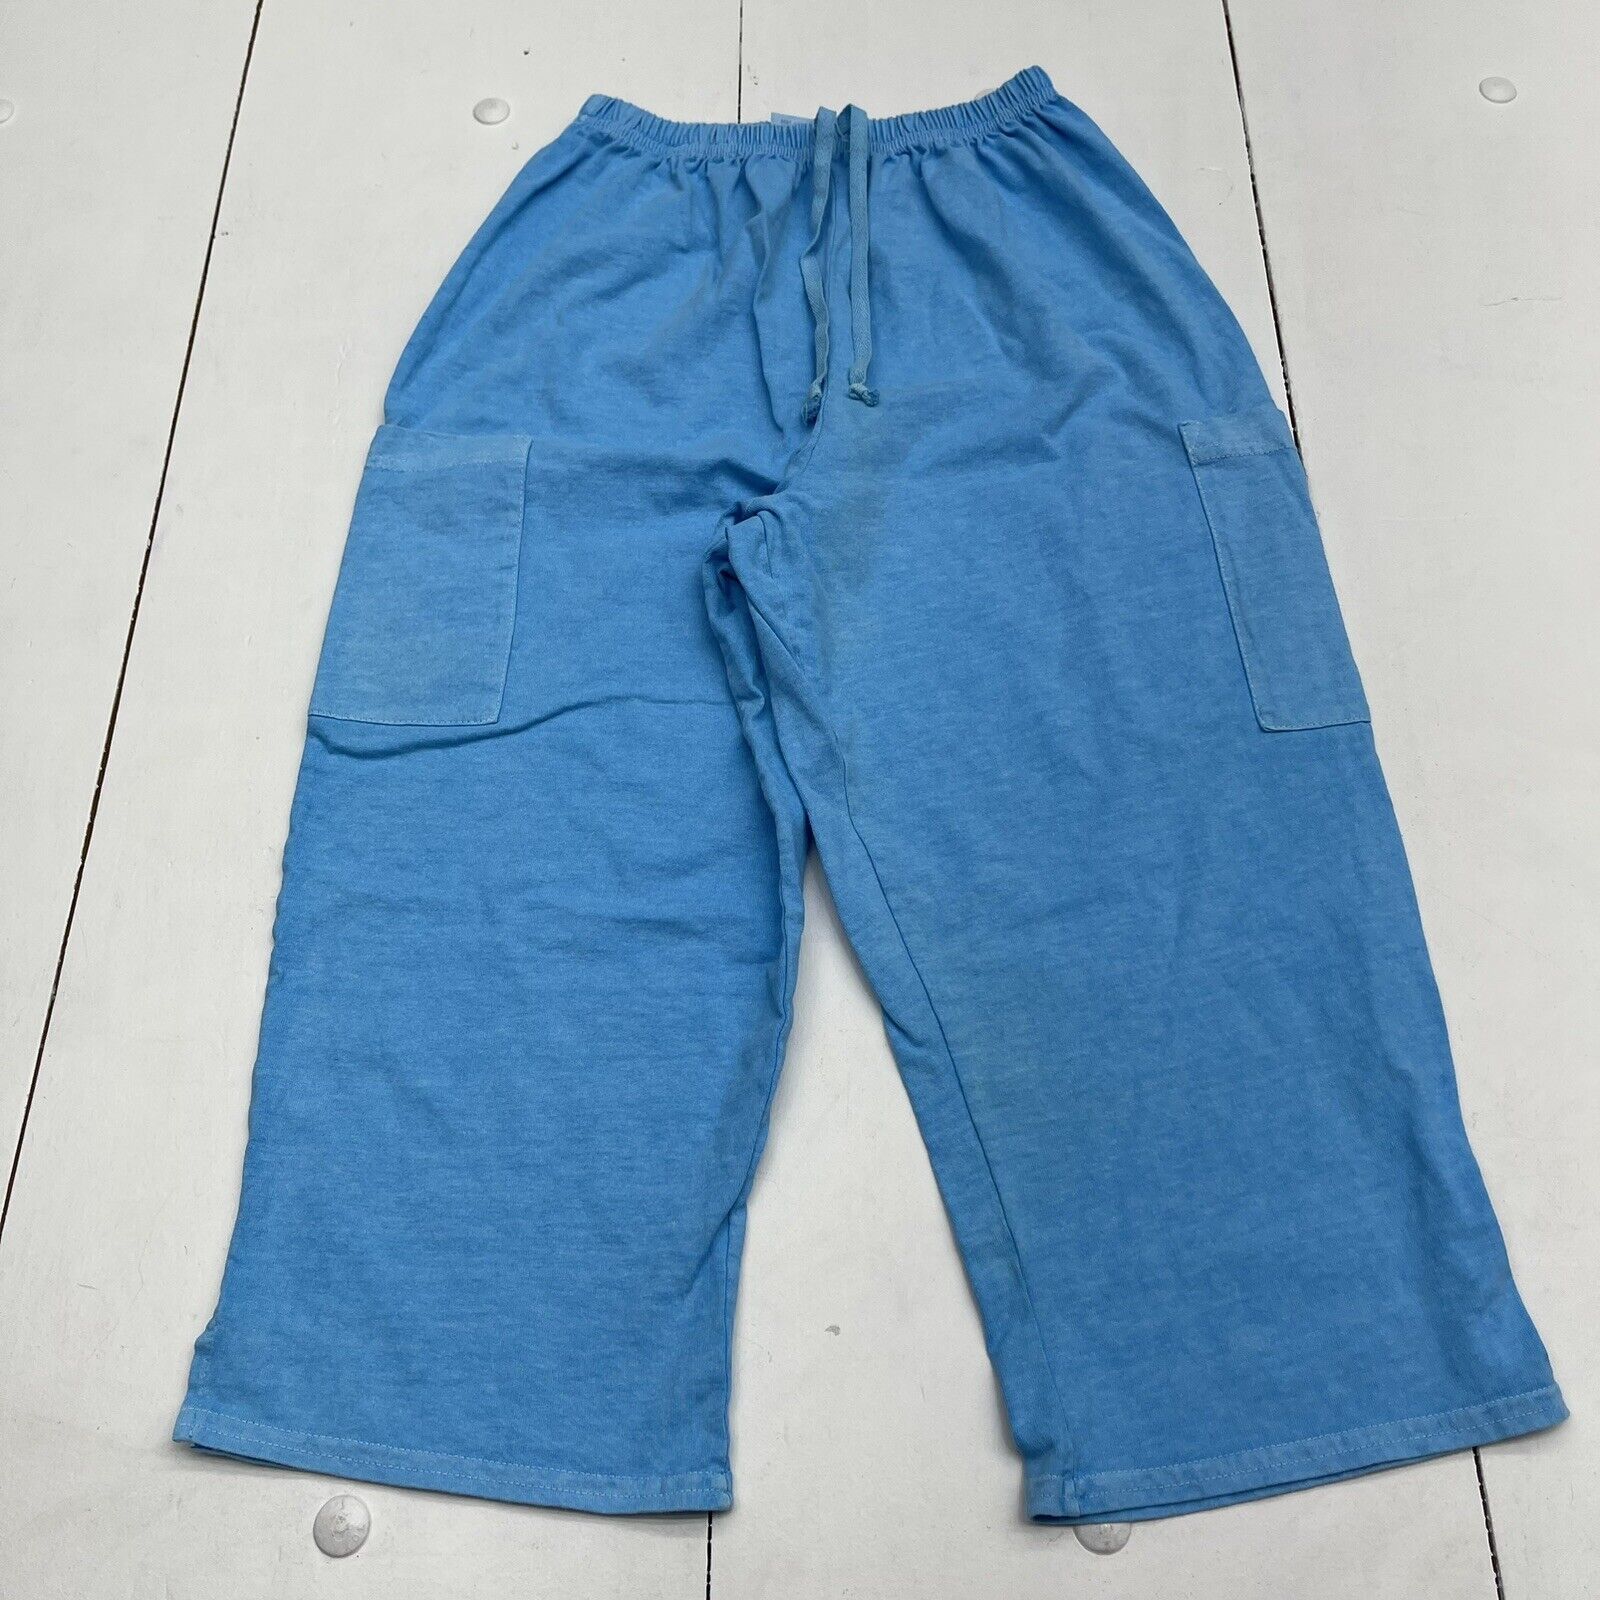 Capris for Women Casual Plus Size High Waist Stretch Solid Color Cotton  Linen Capri Sweatpants with Pockets - Walmart.com